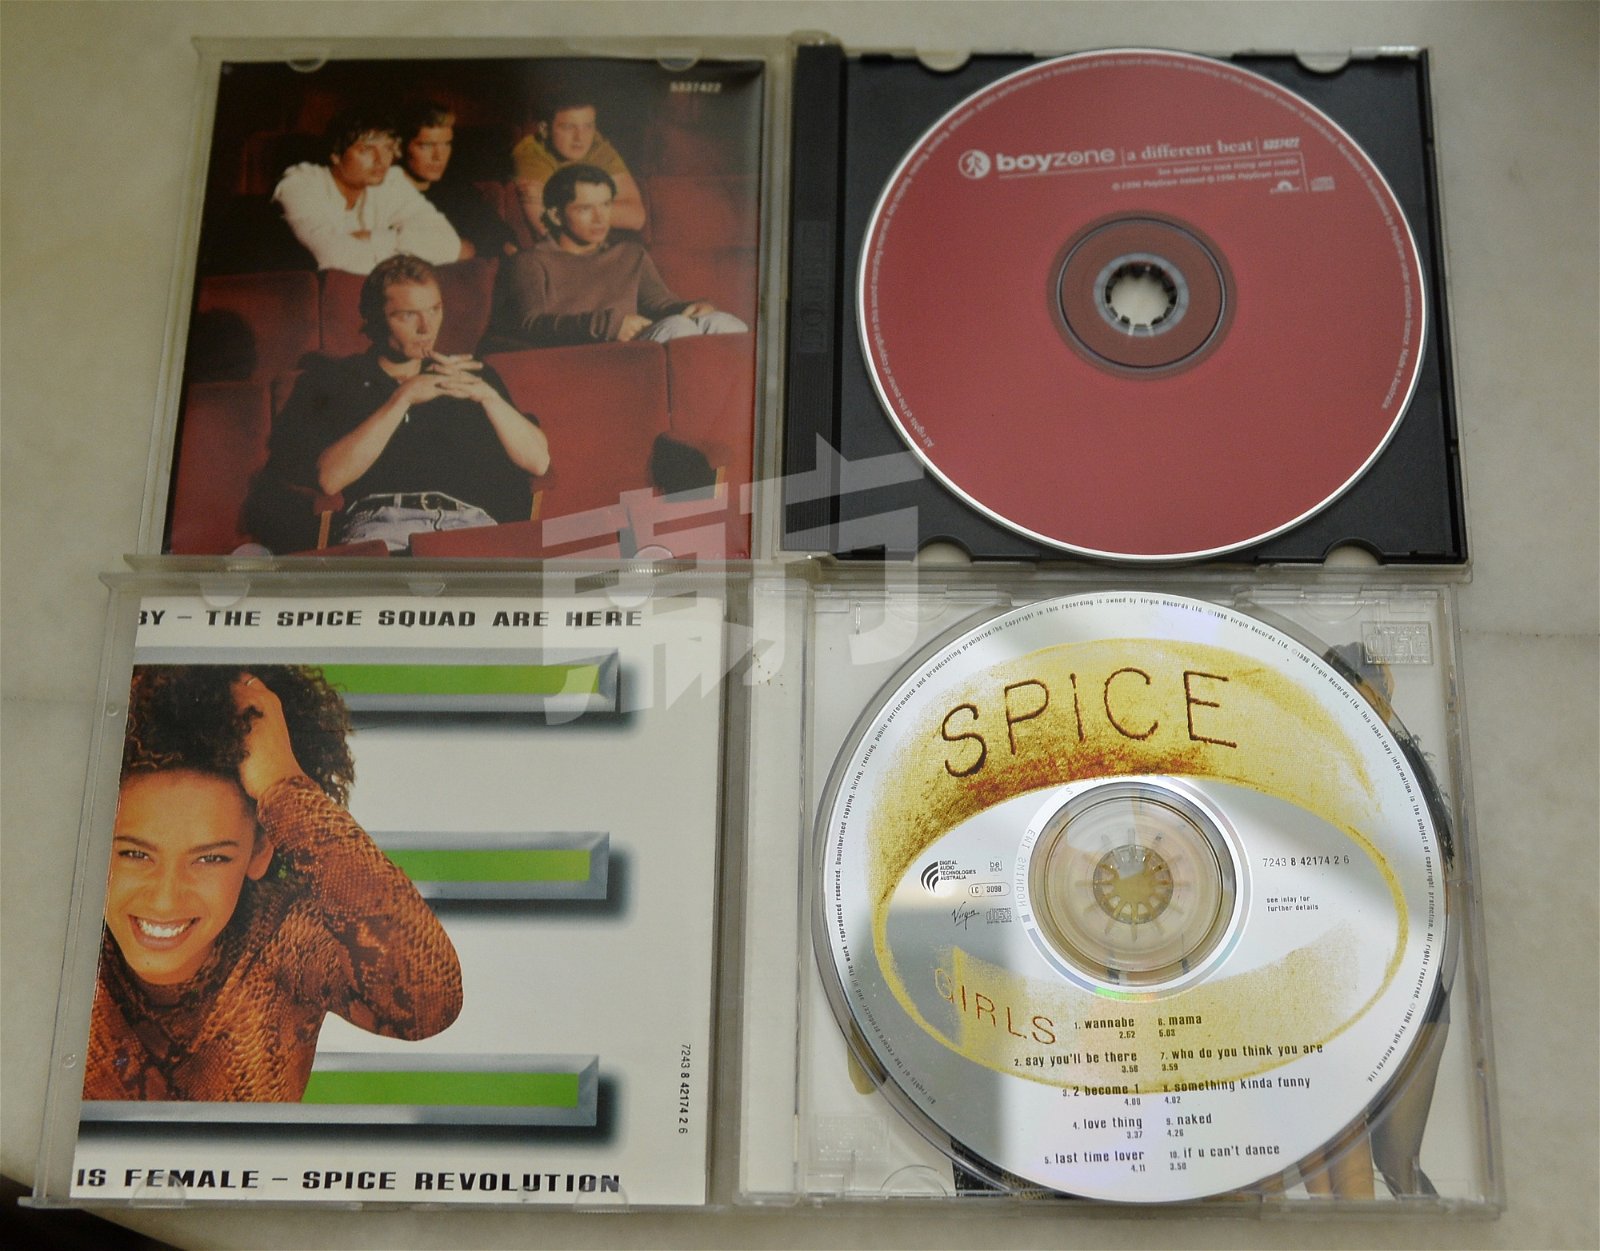 上世纪9 0年代红透半边天的爱尔兰男团“男孩特区”（Boyzone）将来马开唱，作为纪念成军25周年展开的巡演，也是他们的告别演唱会，团队将在演出结束后正式解散。陈升圣的存货中刚好有他们1996年发行的第二张专辑《A Different Beat》。图中下方则是女团“辣妹合唱团”（Spice Girl）1996年的首张专辑《Spice》。这两张专辑都已是22年前的产物。